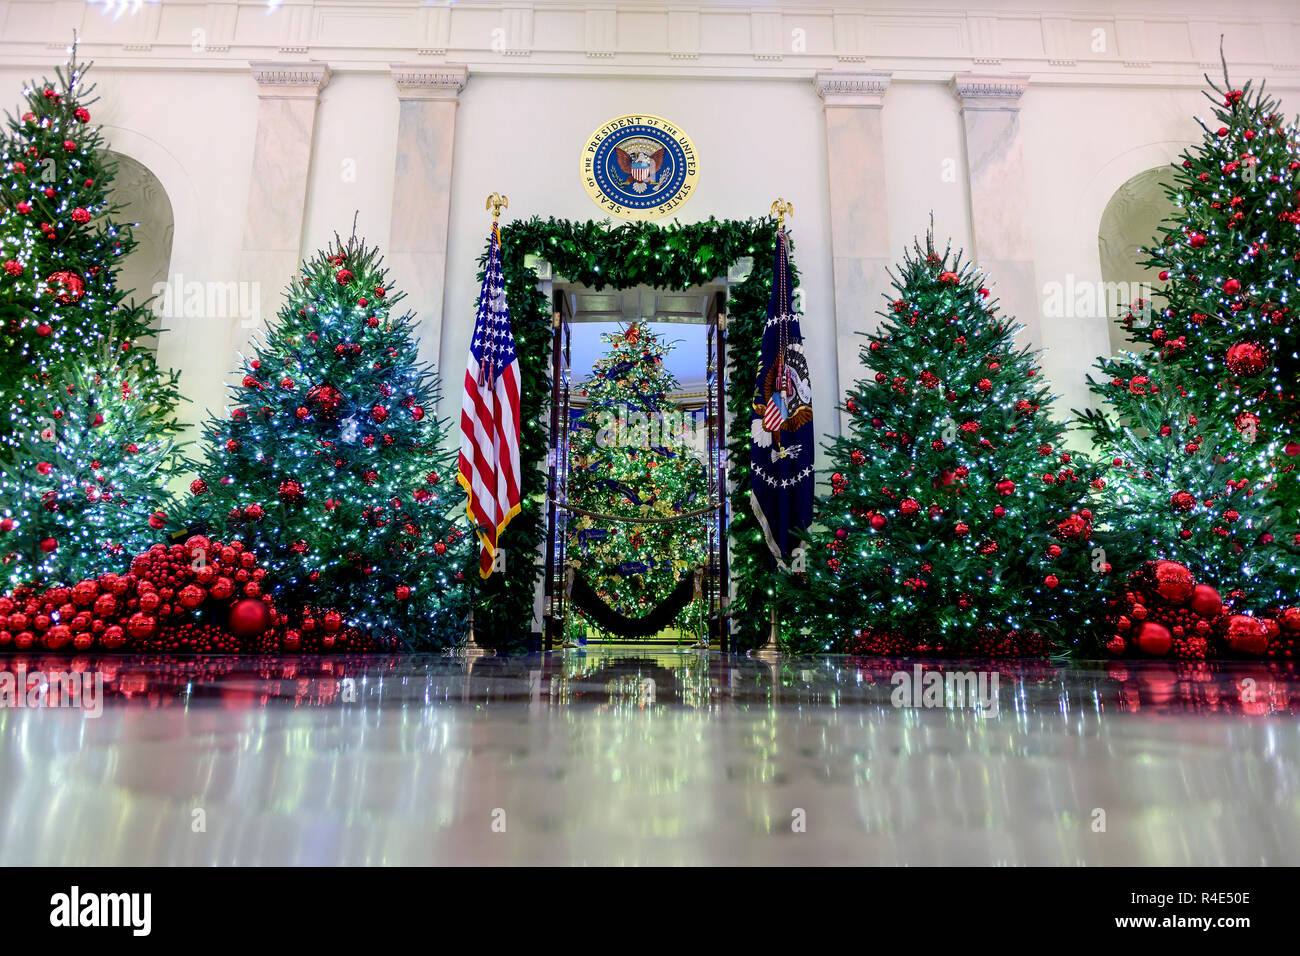 La Casa Blanca de 2018 decoraciones de Navidad, con el lema de "American tesoros" que fueron seleccionados personalmente por primera dama Melania Trump, se anticipó a la prensa en Washington DC el lunes, 26 de noviembre de 2018. Mirando desde este punto de vista es el gran foyer hacia la habitación azul. Crédito: Ron Sachs/CNP /MediaPunch Foto de stock